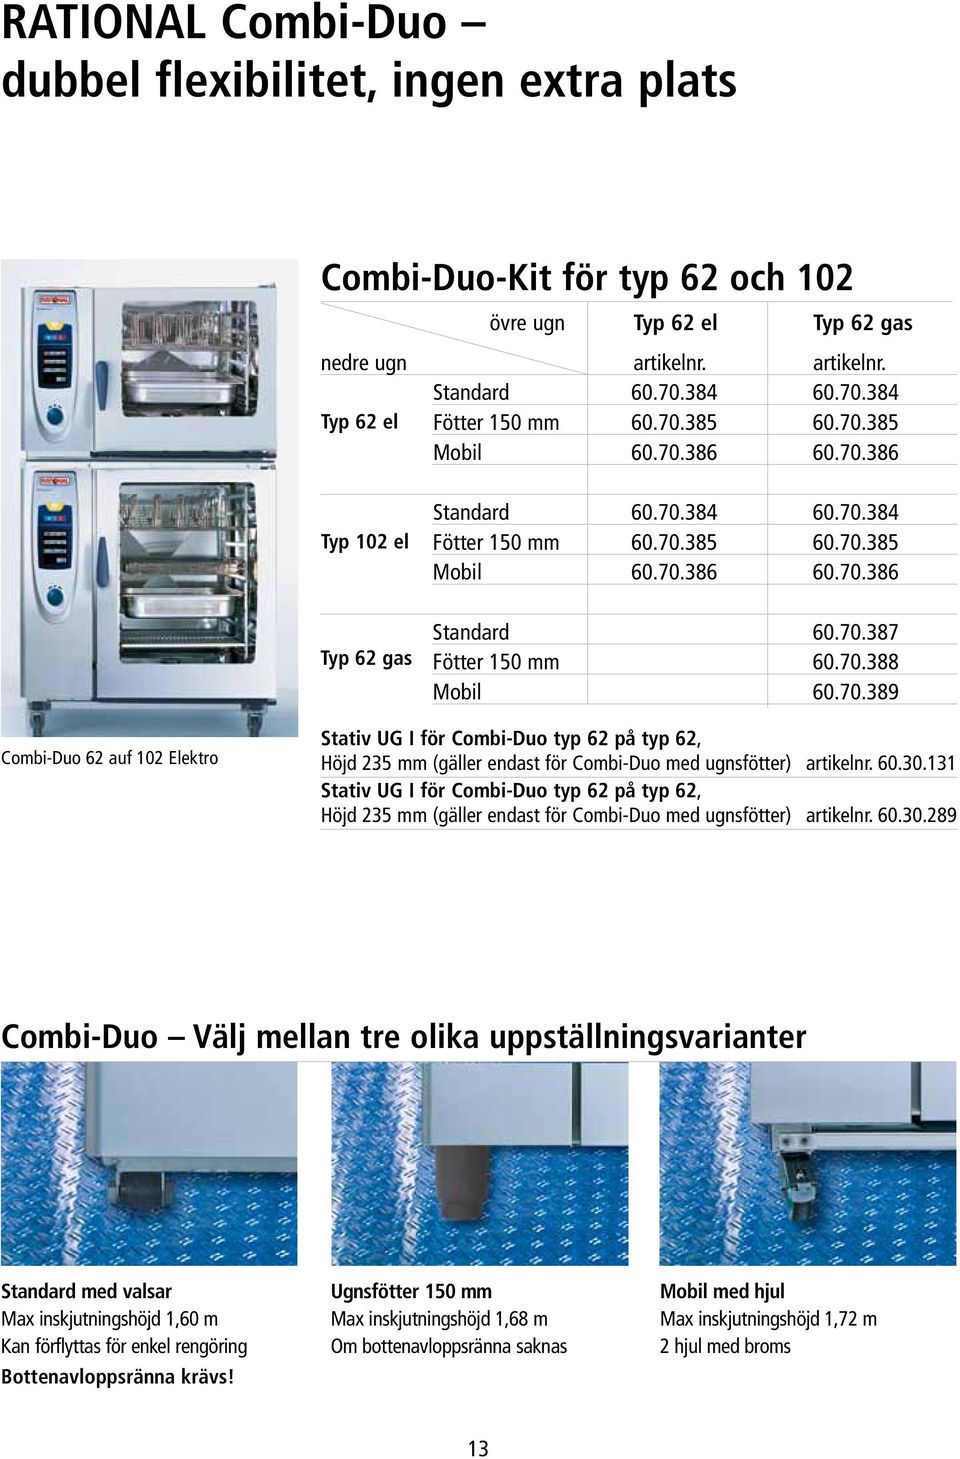 70.389 Combi-Duo 62 auf 102 Elektro Stativ UG I för Combi-Duo typ 62 på typ 62, Höjd 235 mm (gäller endast för Combi-Duo med ugnsfötter) artikelnr. 60.30.